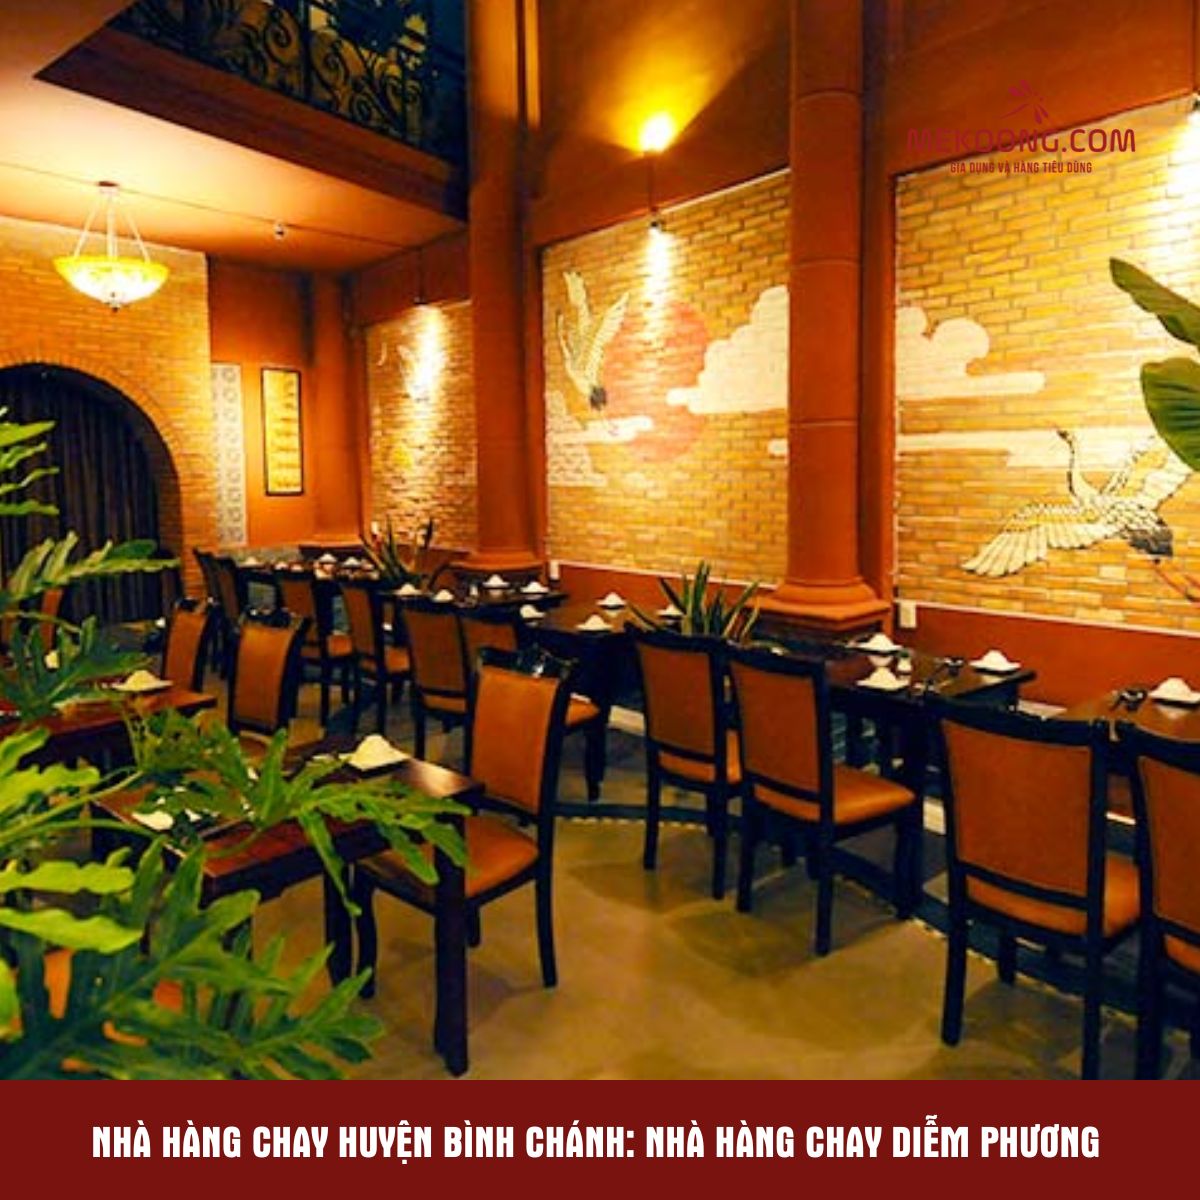 Nhà hàng chay huyện Bình Chánh: Nhà hàng chay Diễm Phương